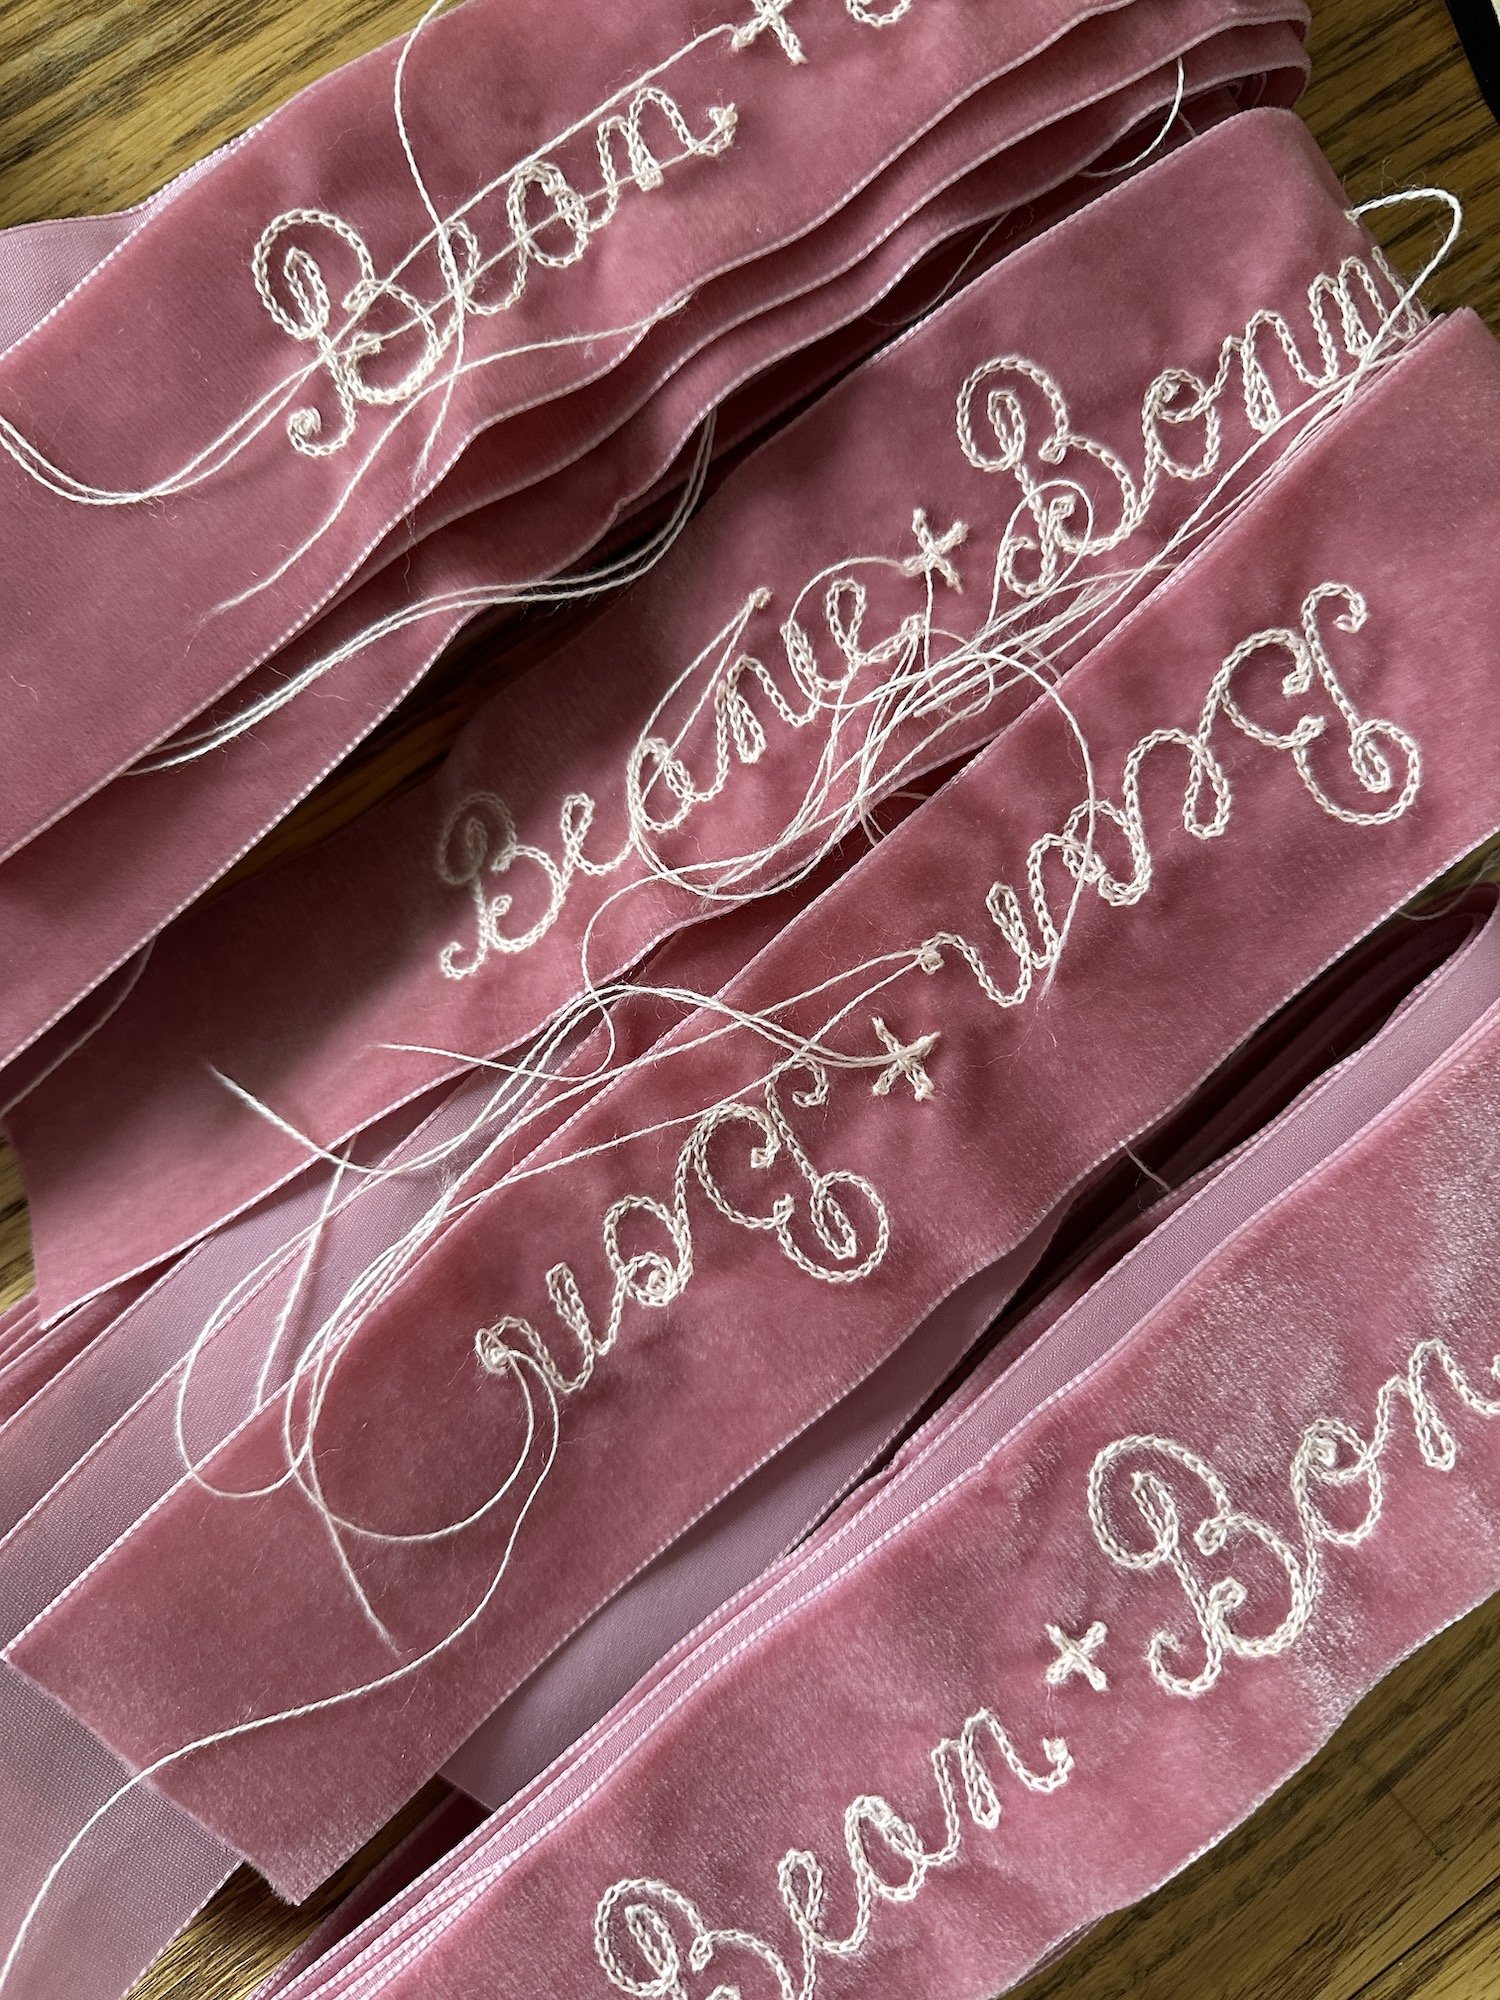 Beanie Feldstein embroidered ribbons wedding gucci vogue.JPG